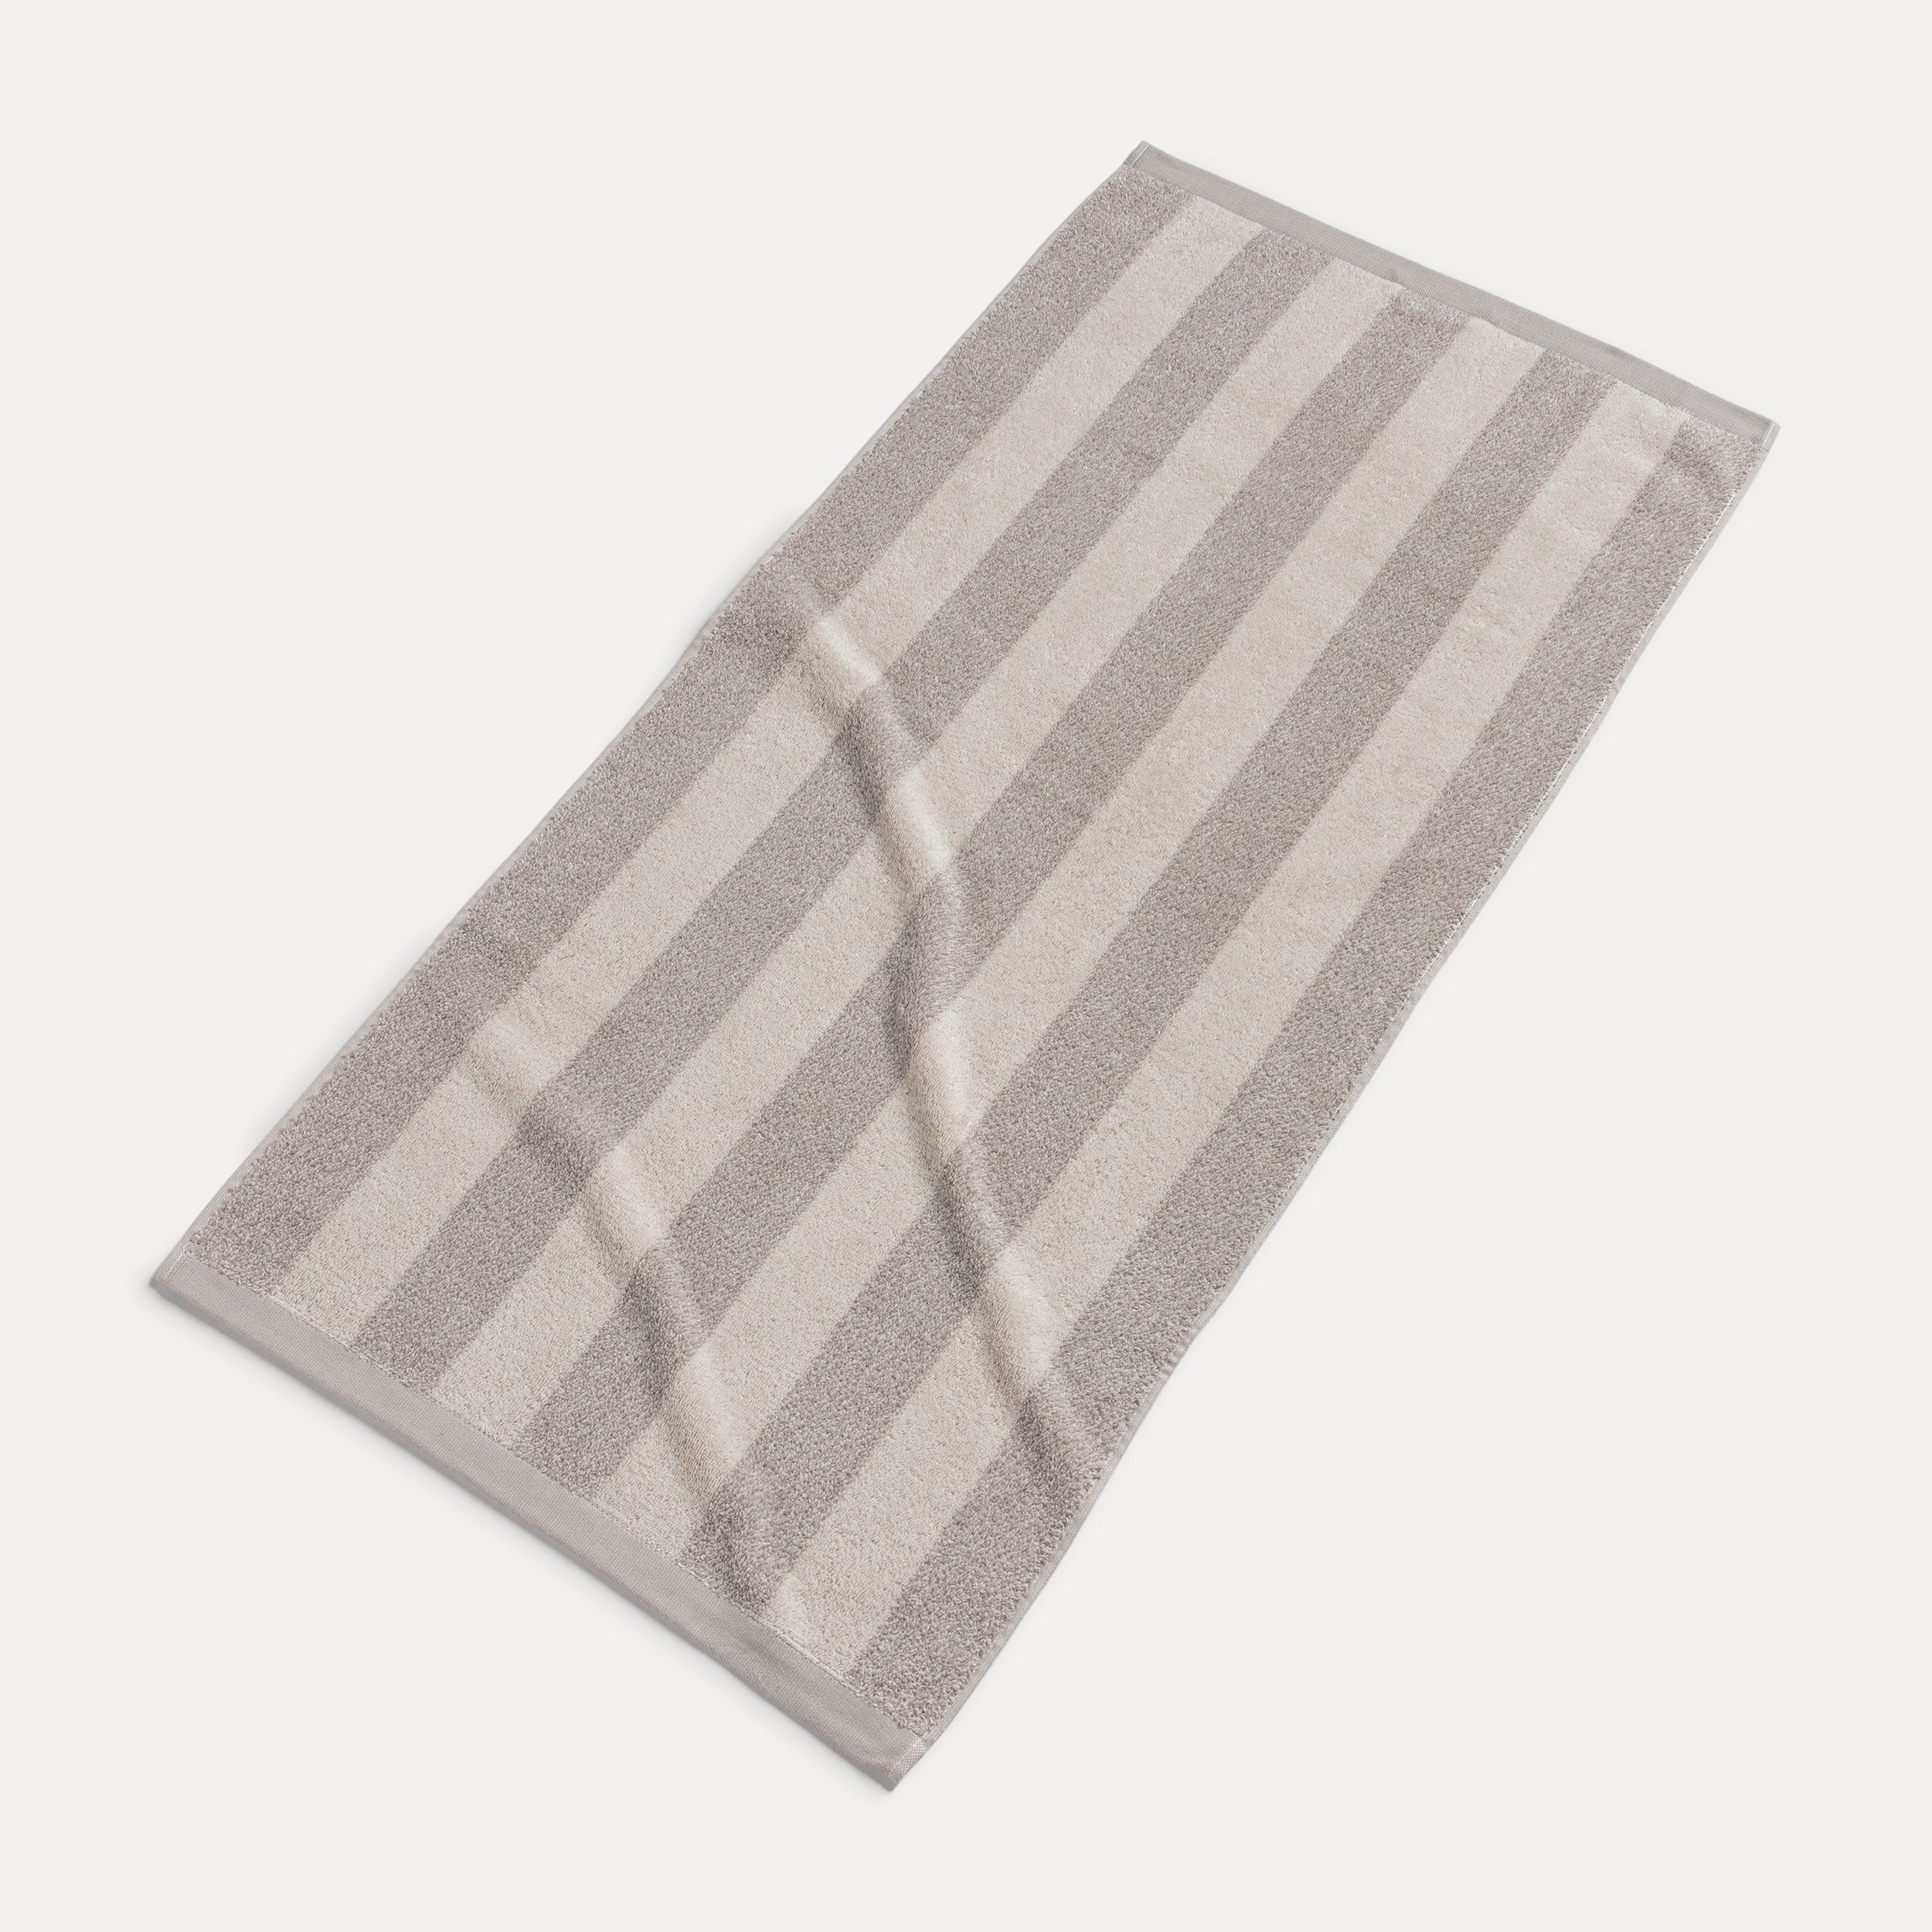 Handtuch (nature/cashmere)| Timeless MÖVE Beige möve 50X100 cm